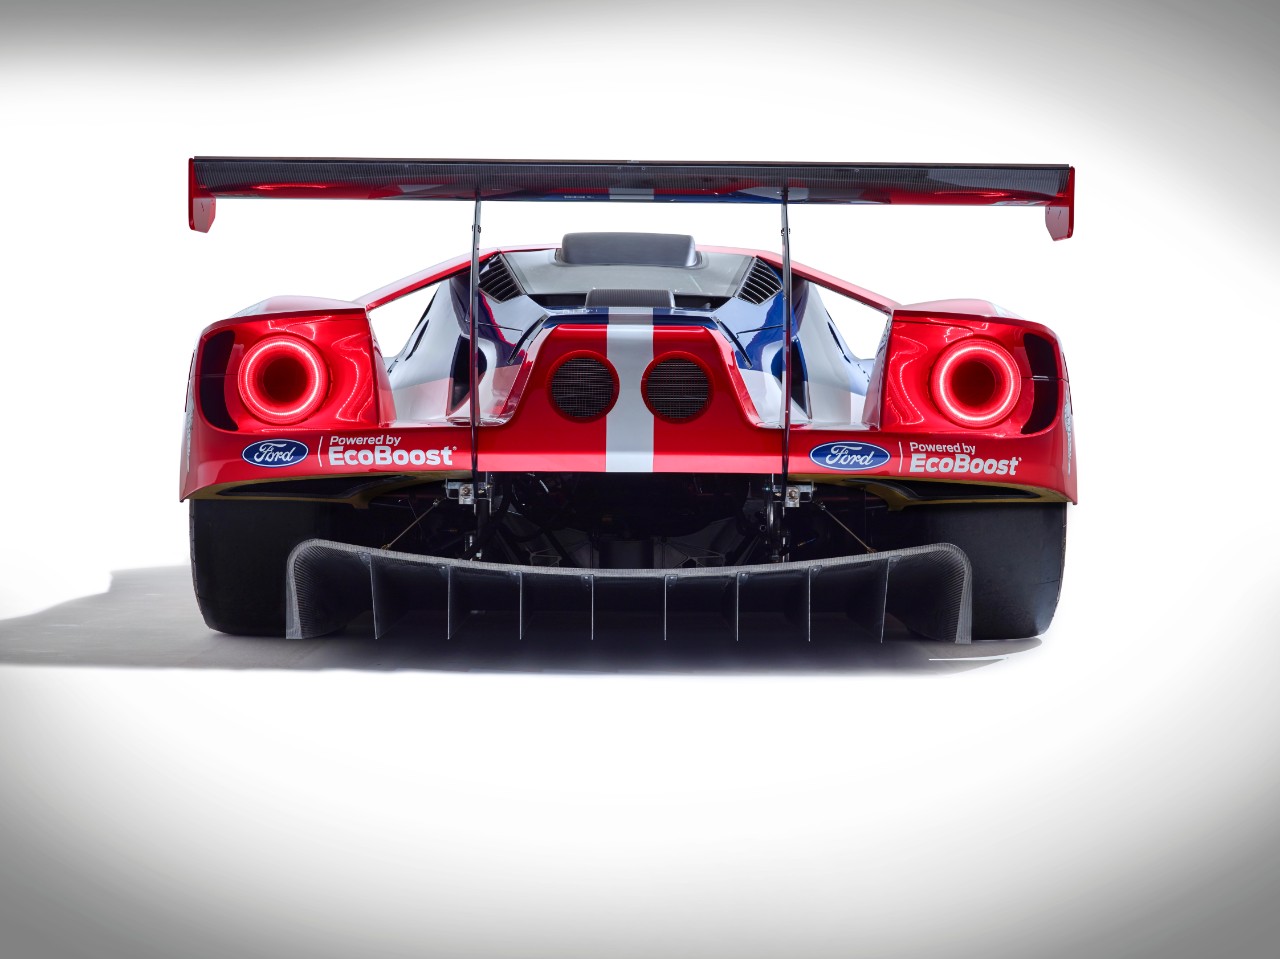 Met deze GT wil Ford in 2016 de 24 uur van Le Mans winnen